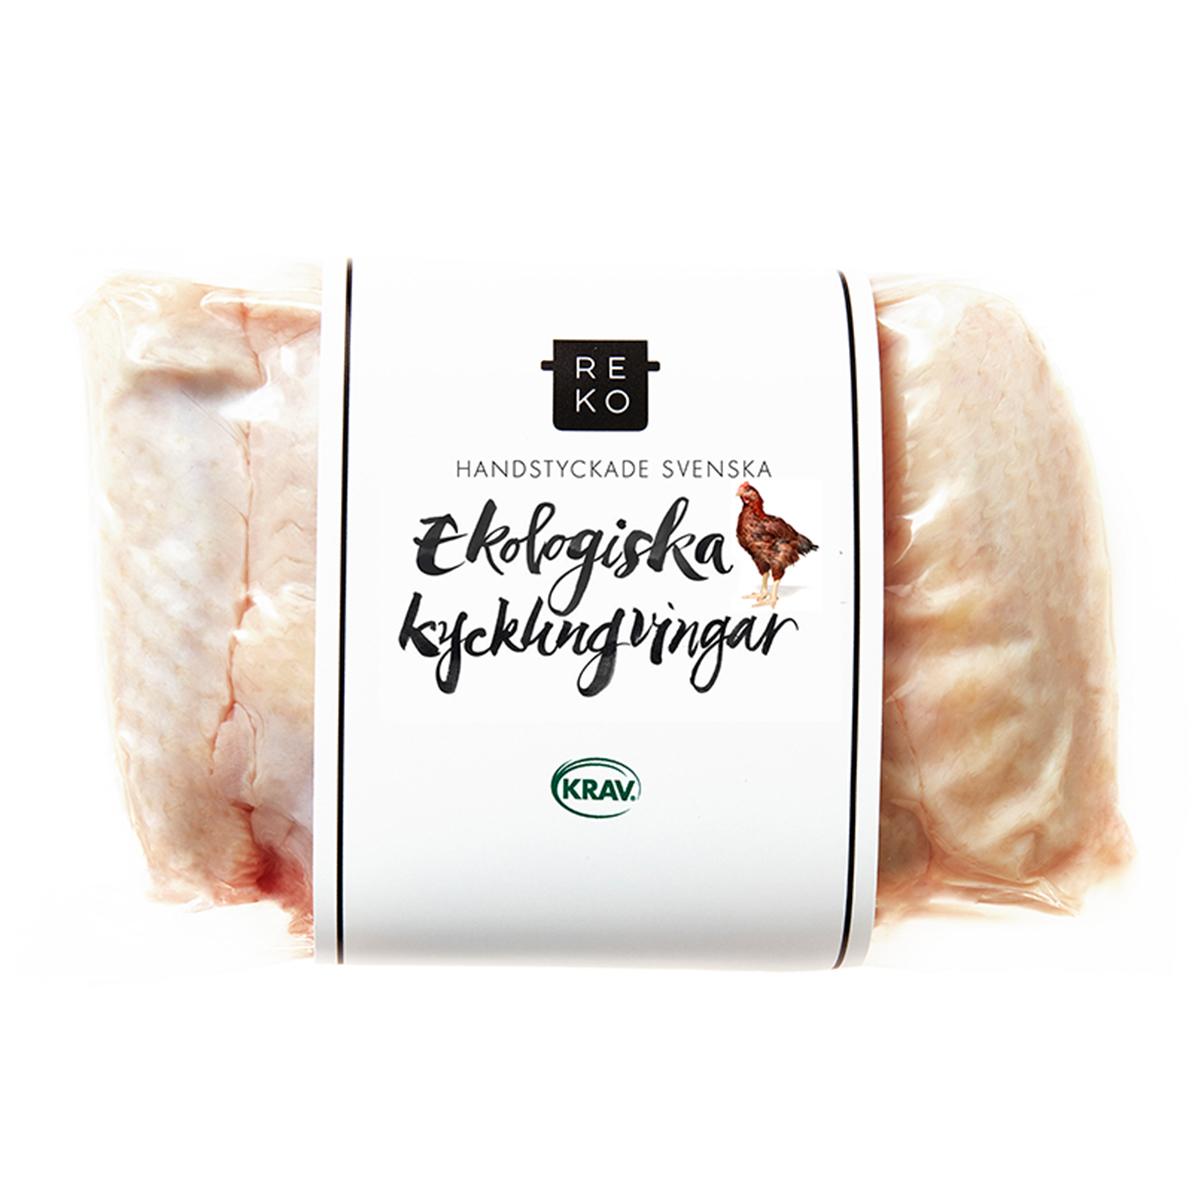 Reko Gårdar's Kycklingvingar'